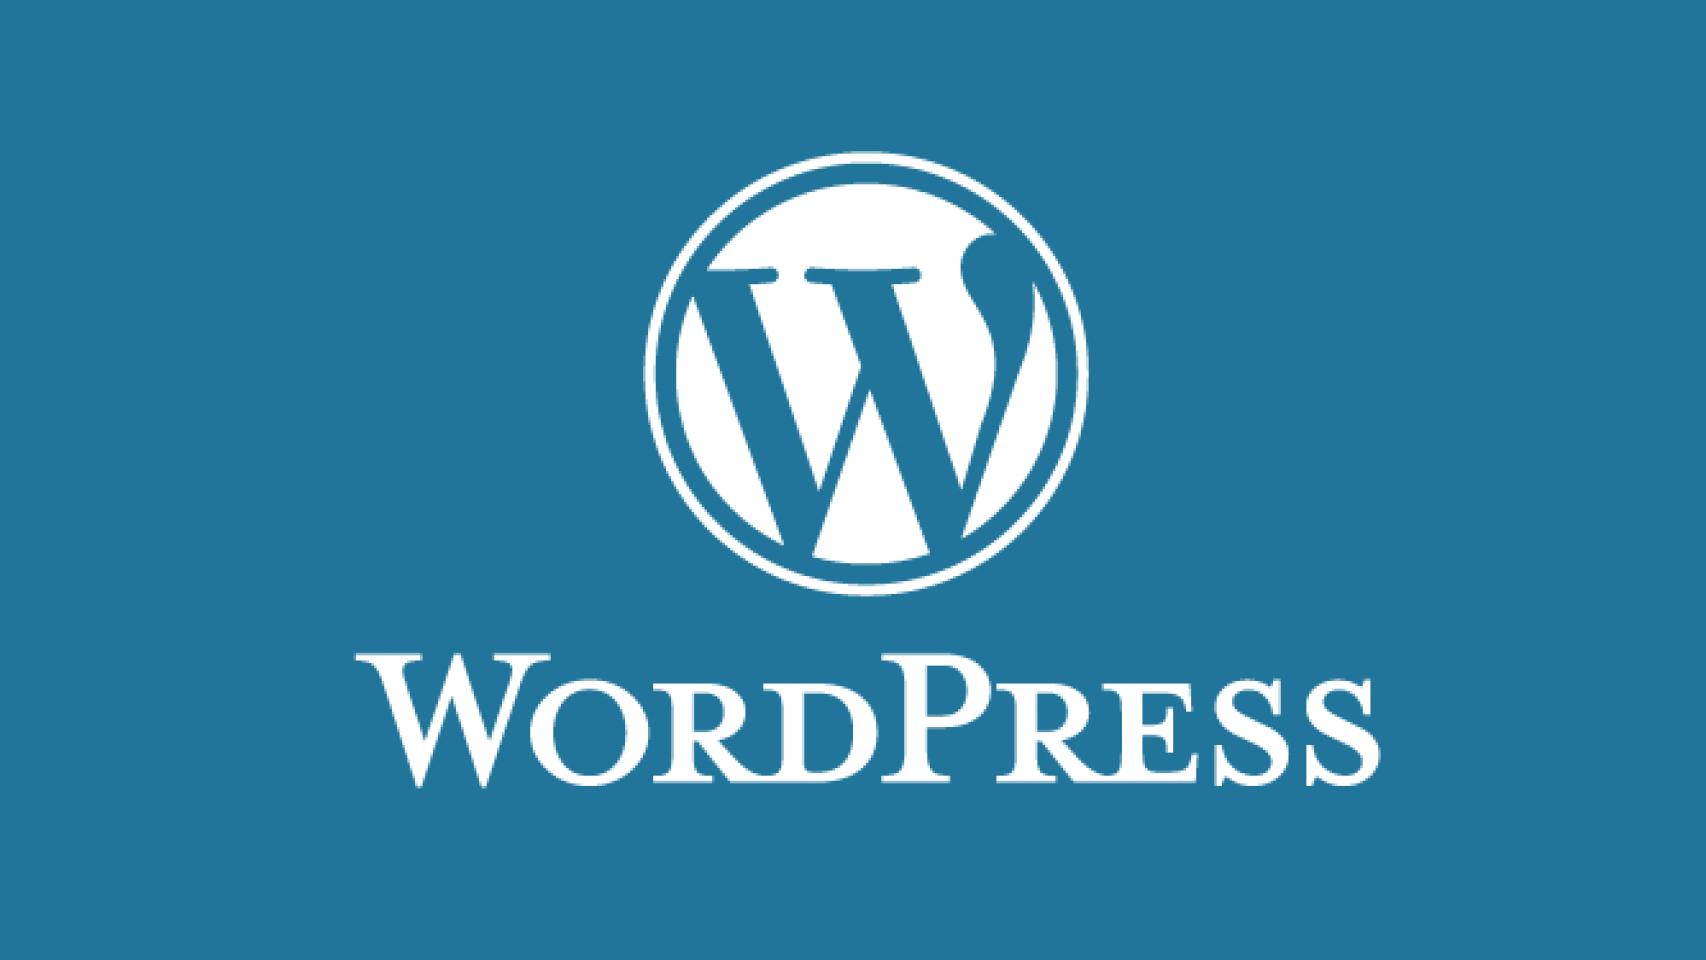 WordPress para Android 3.2: lista de entradas actualizado, visualizar imágenes y más